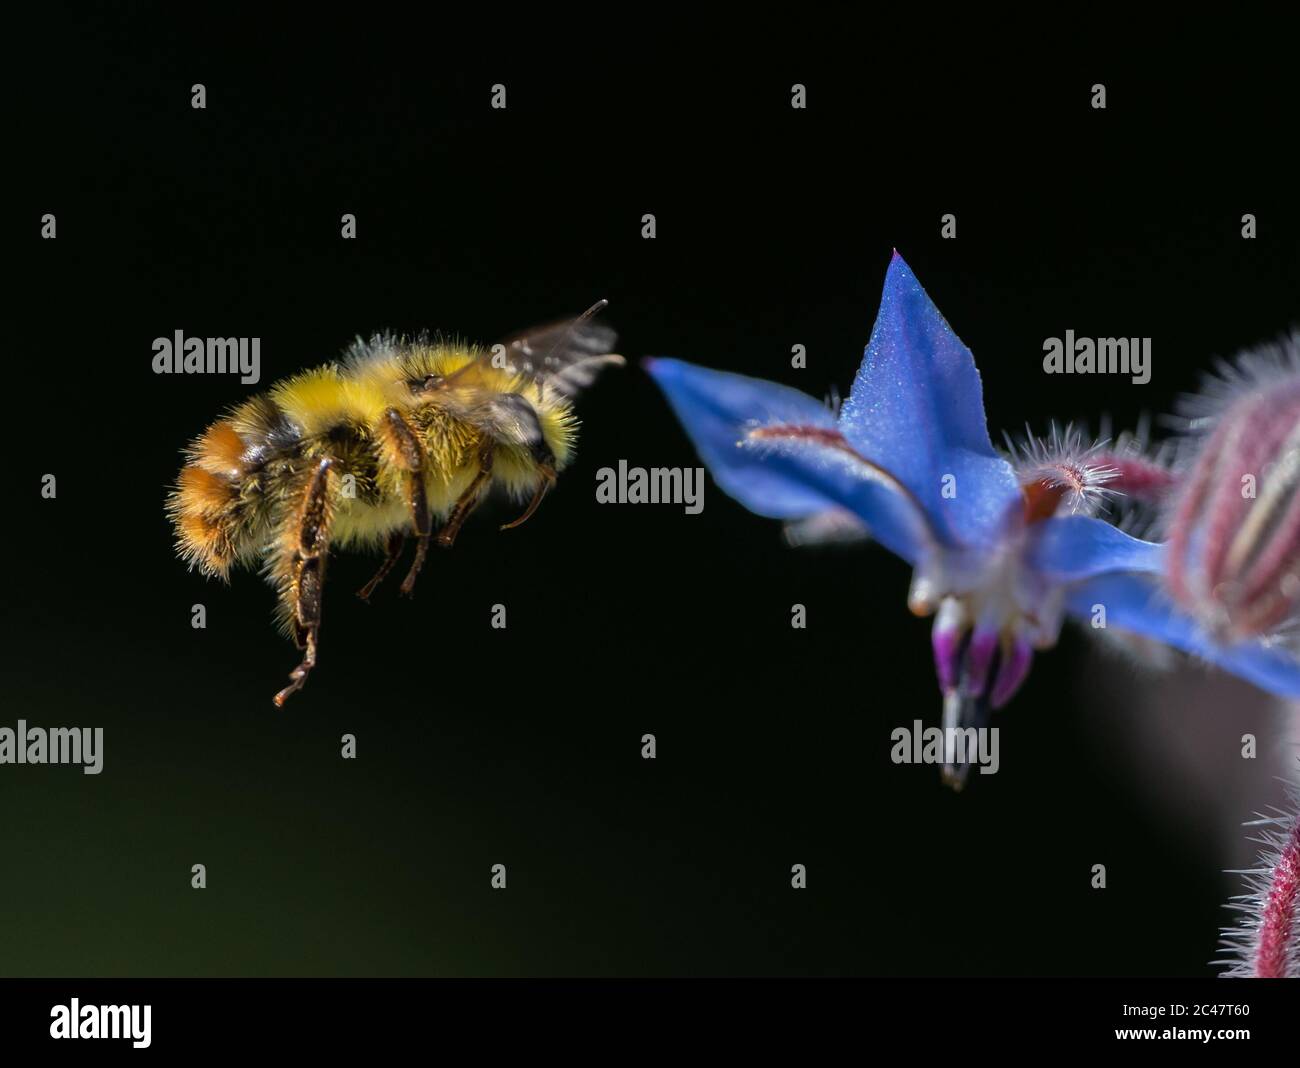 Bumblebee de cuernos borrosos flotando cerca de una flor de Borage azul (Bombus mixtus) Foto de stock